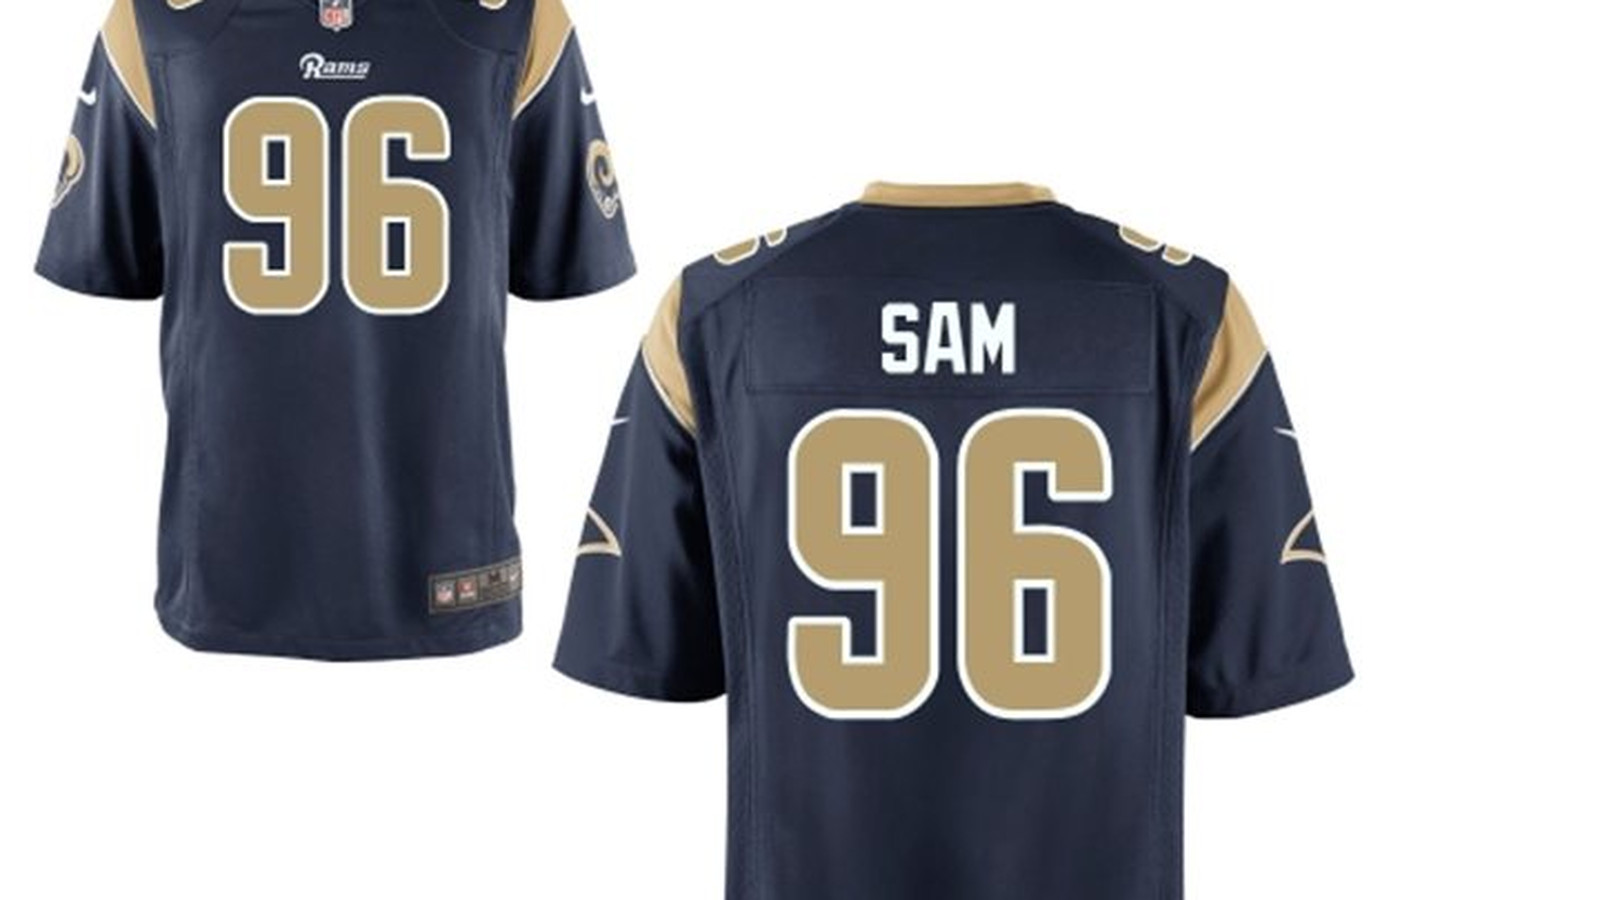 Michael Sam î€€jerseysî€ No.2 selling among all NFL rookies - Outsports